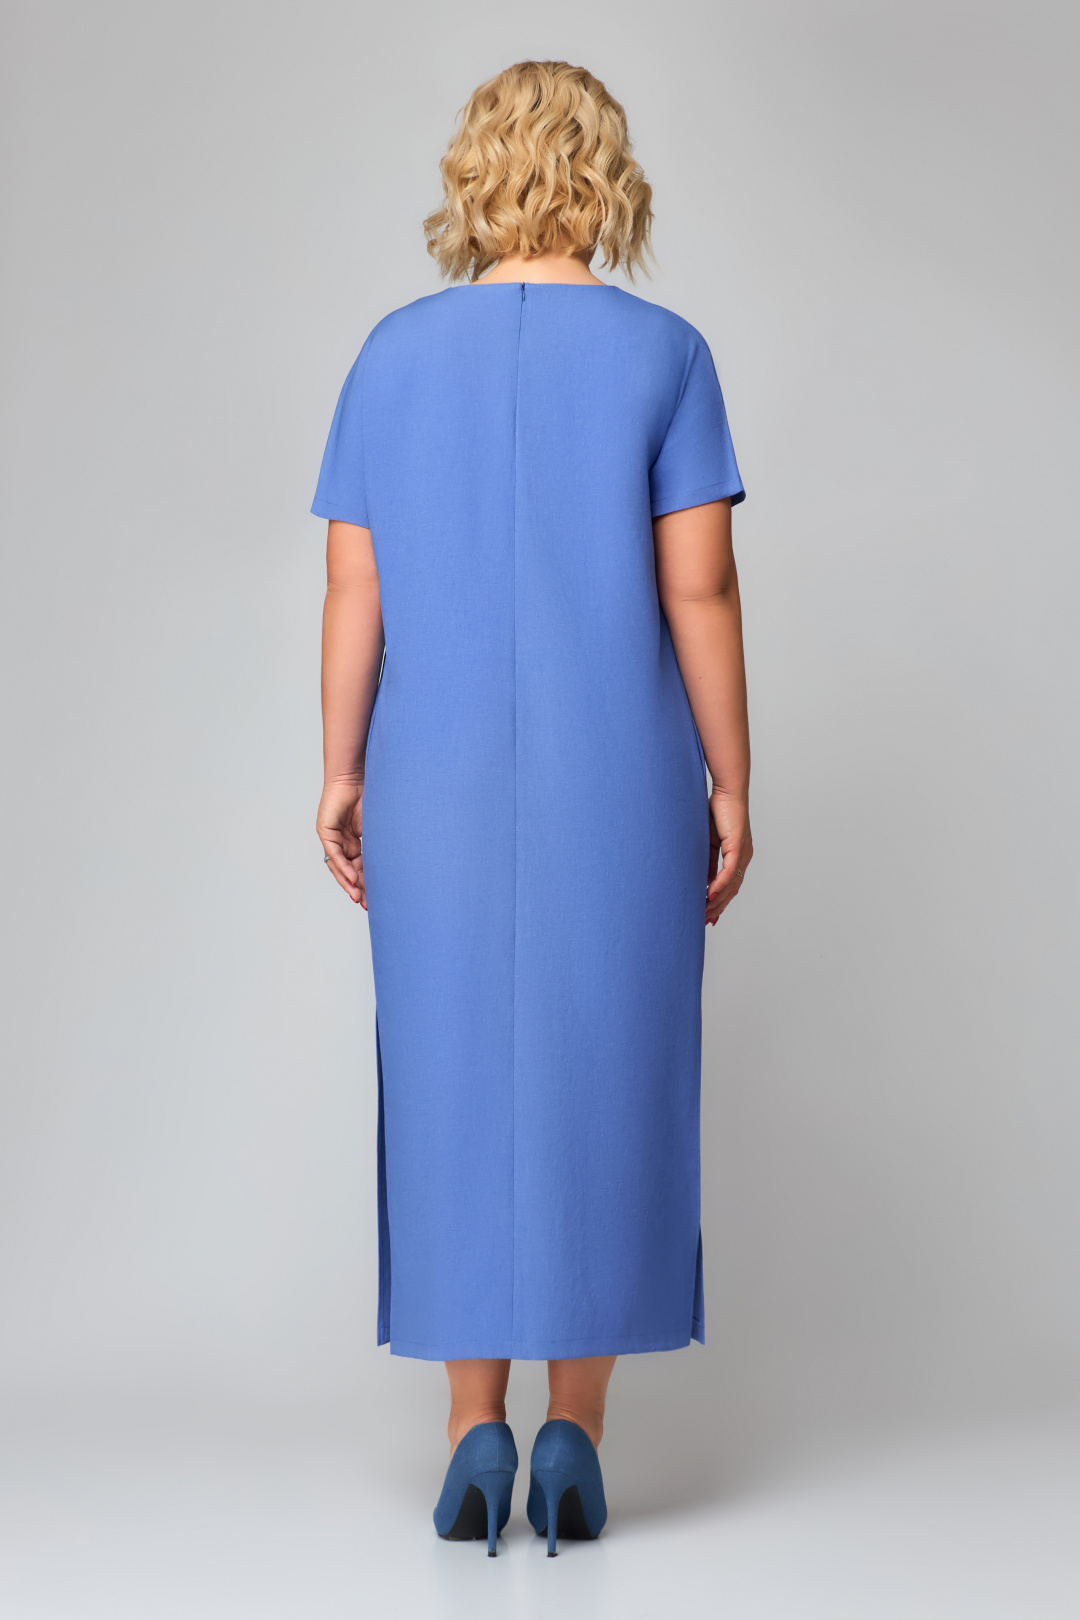 Платье Светлана-Стиль 1928 голубой